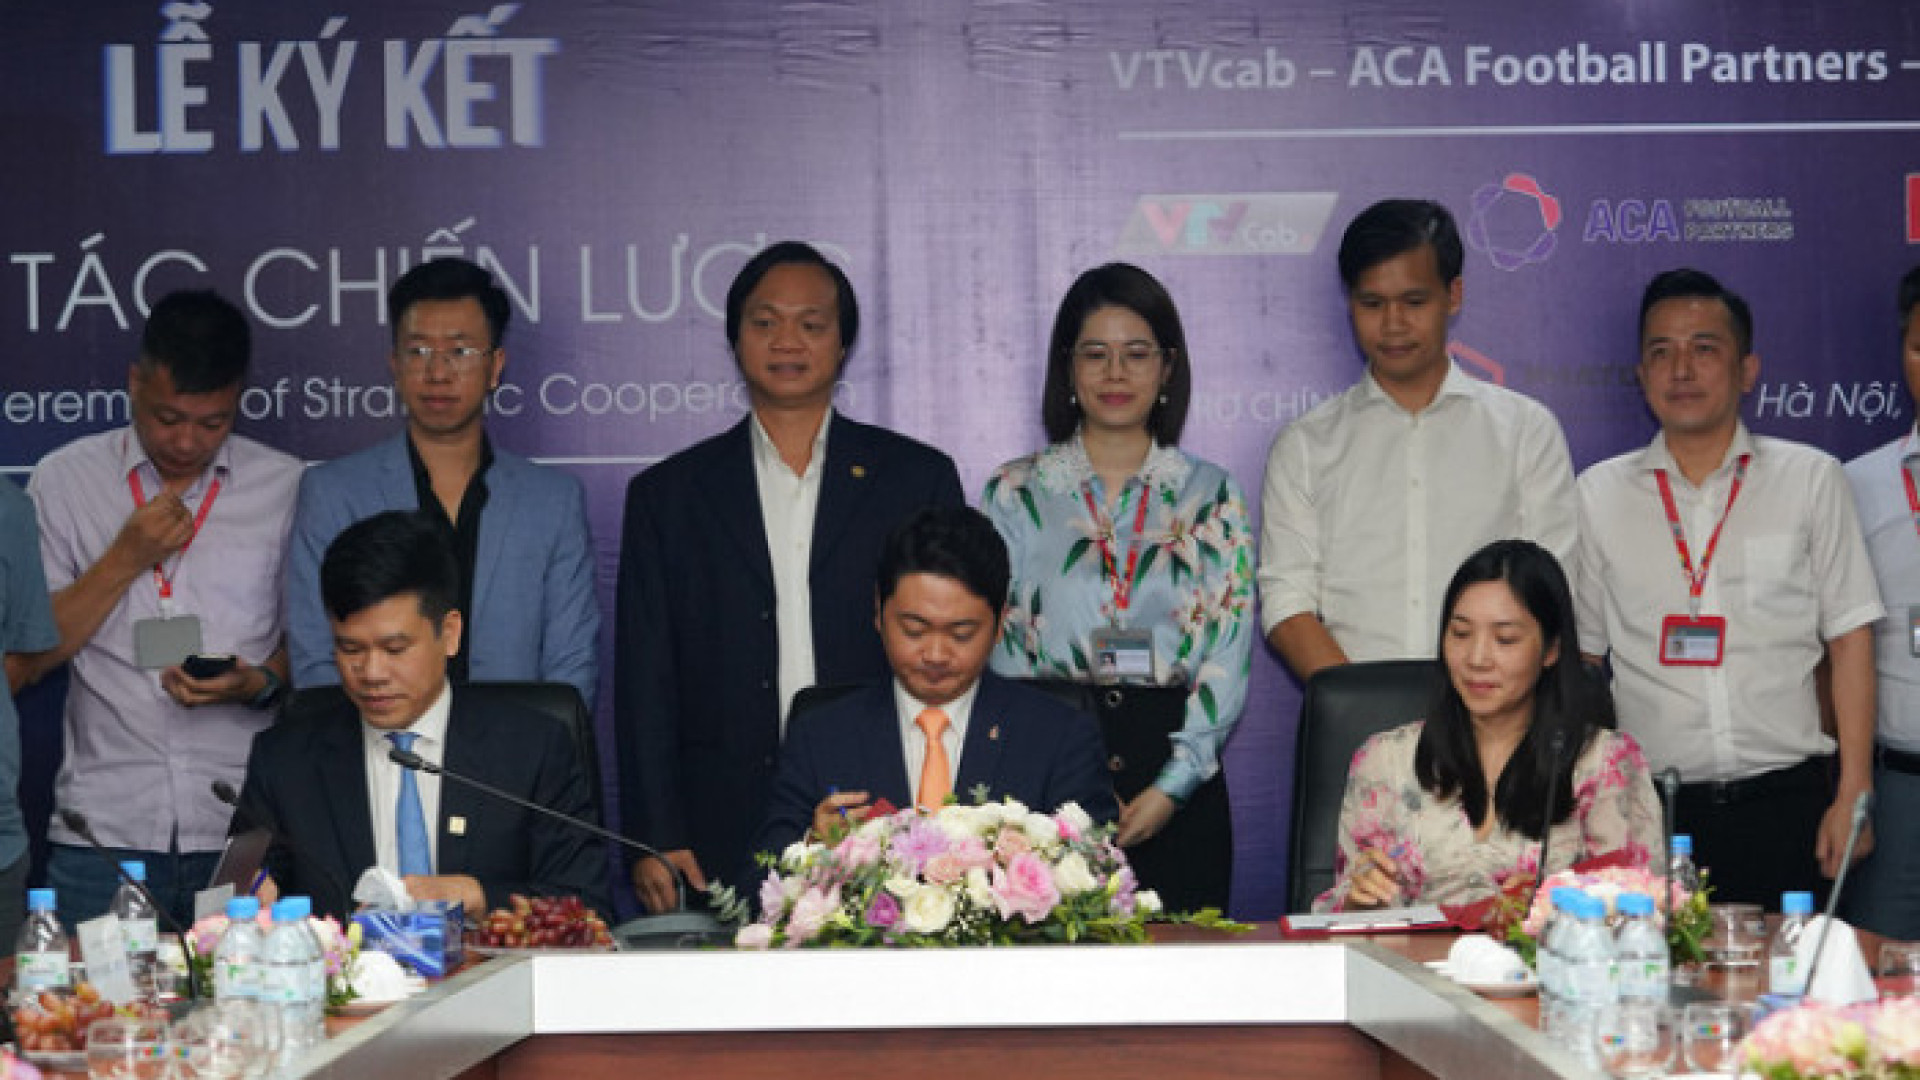 Chuyện cầu thủ trẻ Việt Nam tại châu Âu trong "Rising Star" chuẩn bị lên sóng VTVcab